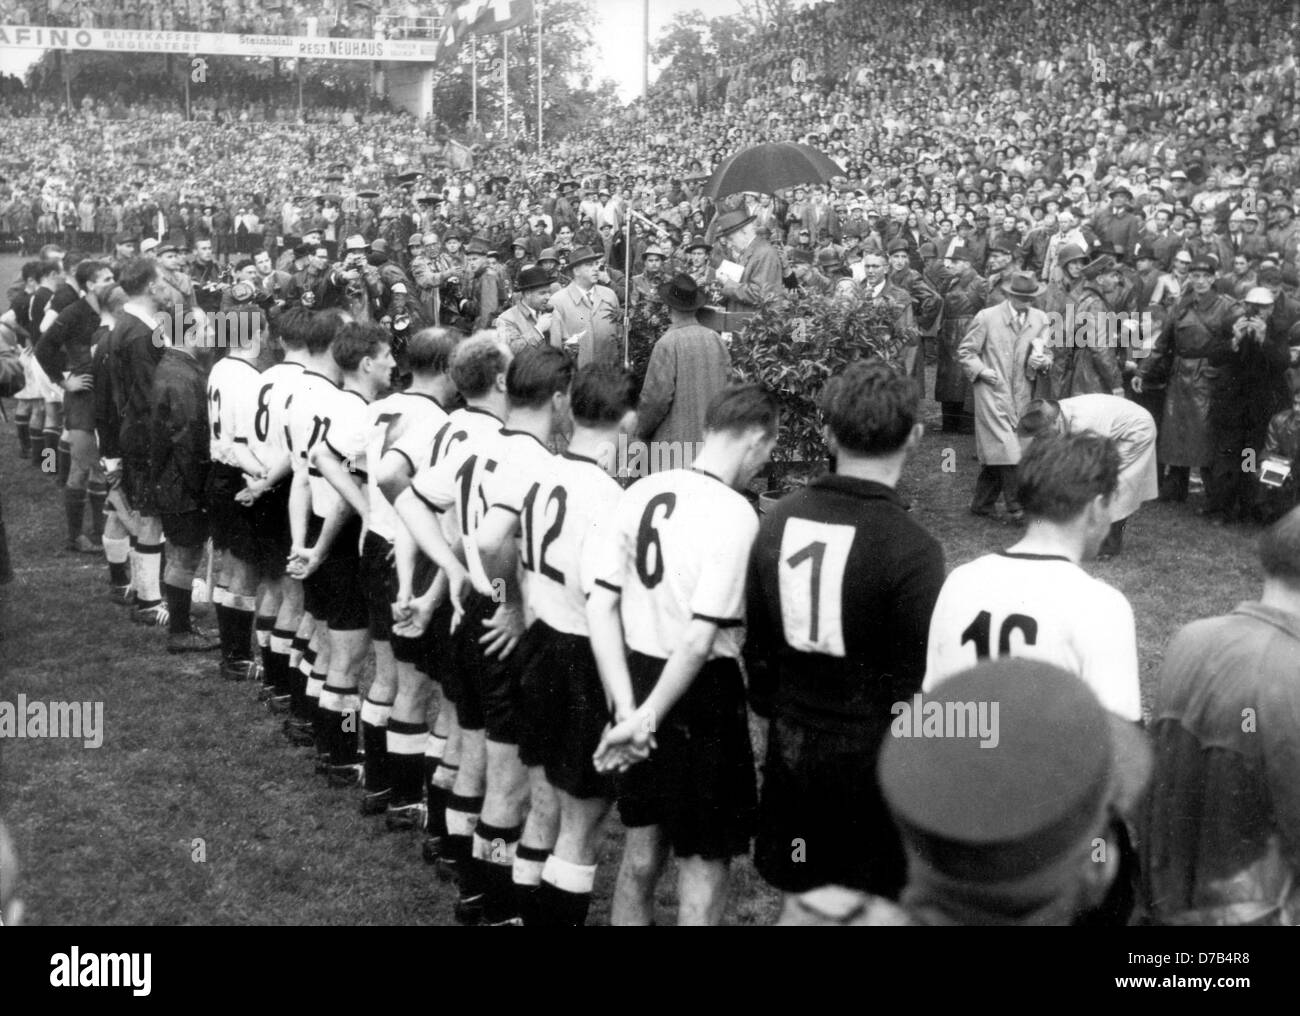 Dopo aver battuto Ungheria 3:2 nel 1954 FIFA World Cup finale a Berna Wankdorf stadium davanti a 60.000 spettatori il 4 luglio 1954, Germania linee fino per la vittoria in Coppa del Mondo cerimonia. La foto mostra (l-r) team capitano Fritz Walter (16), portiere Toni Turek (1), Horst Eckel (6), Helmut Rahn (12), Ottmar Walter (15), Werner Liebrich (10), Jupp Posipal (7), Hans Schäfer (20), Werner Kohlmeyer (3), Karl ami (8) e Max Morlock (13). Foto Stock